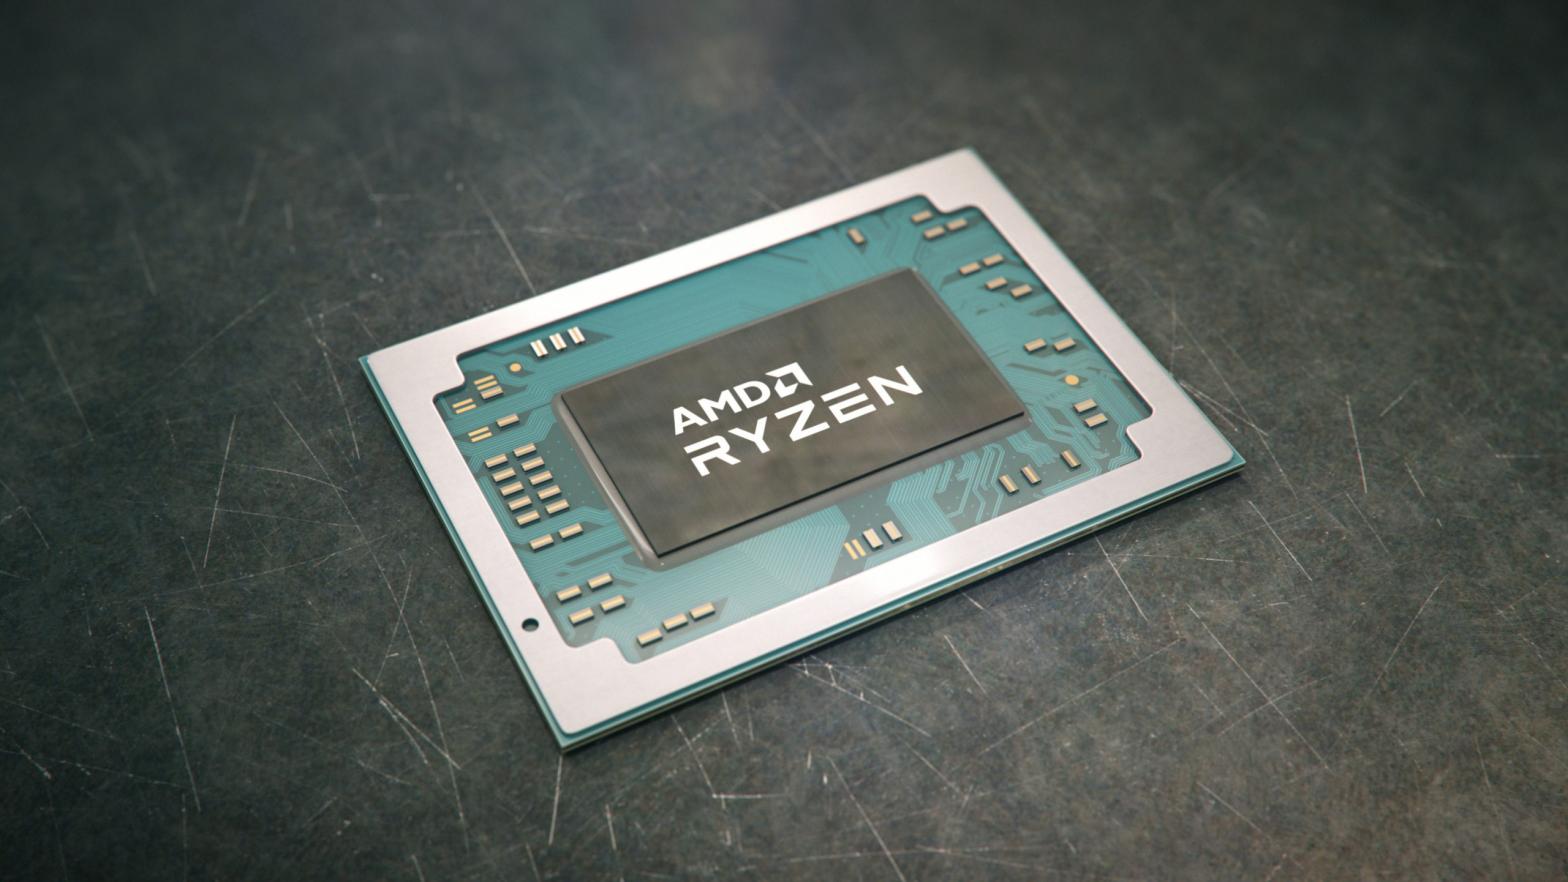 Image: AMD